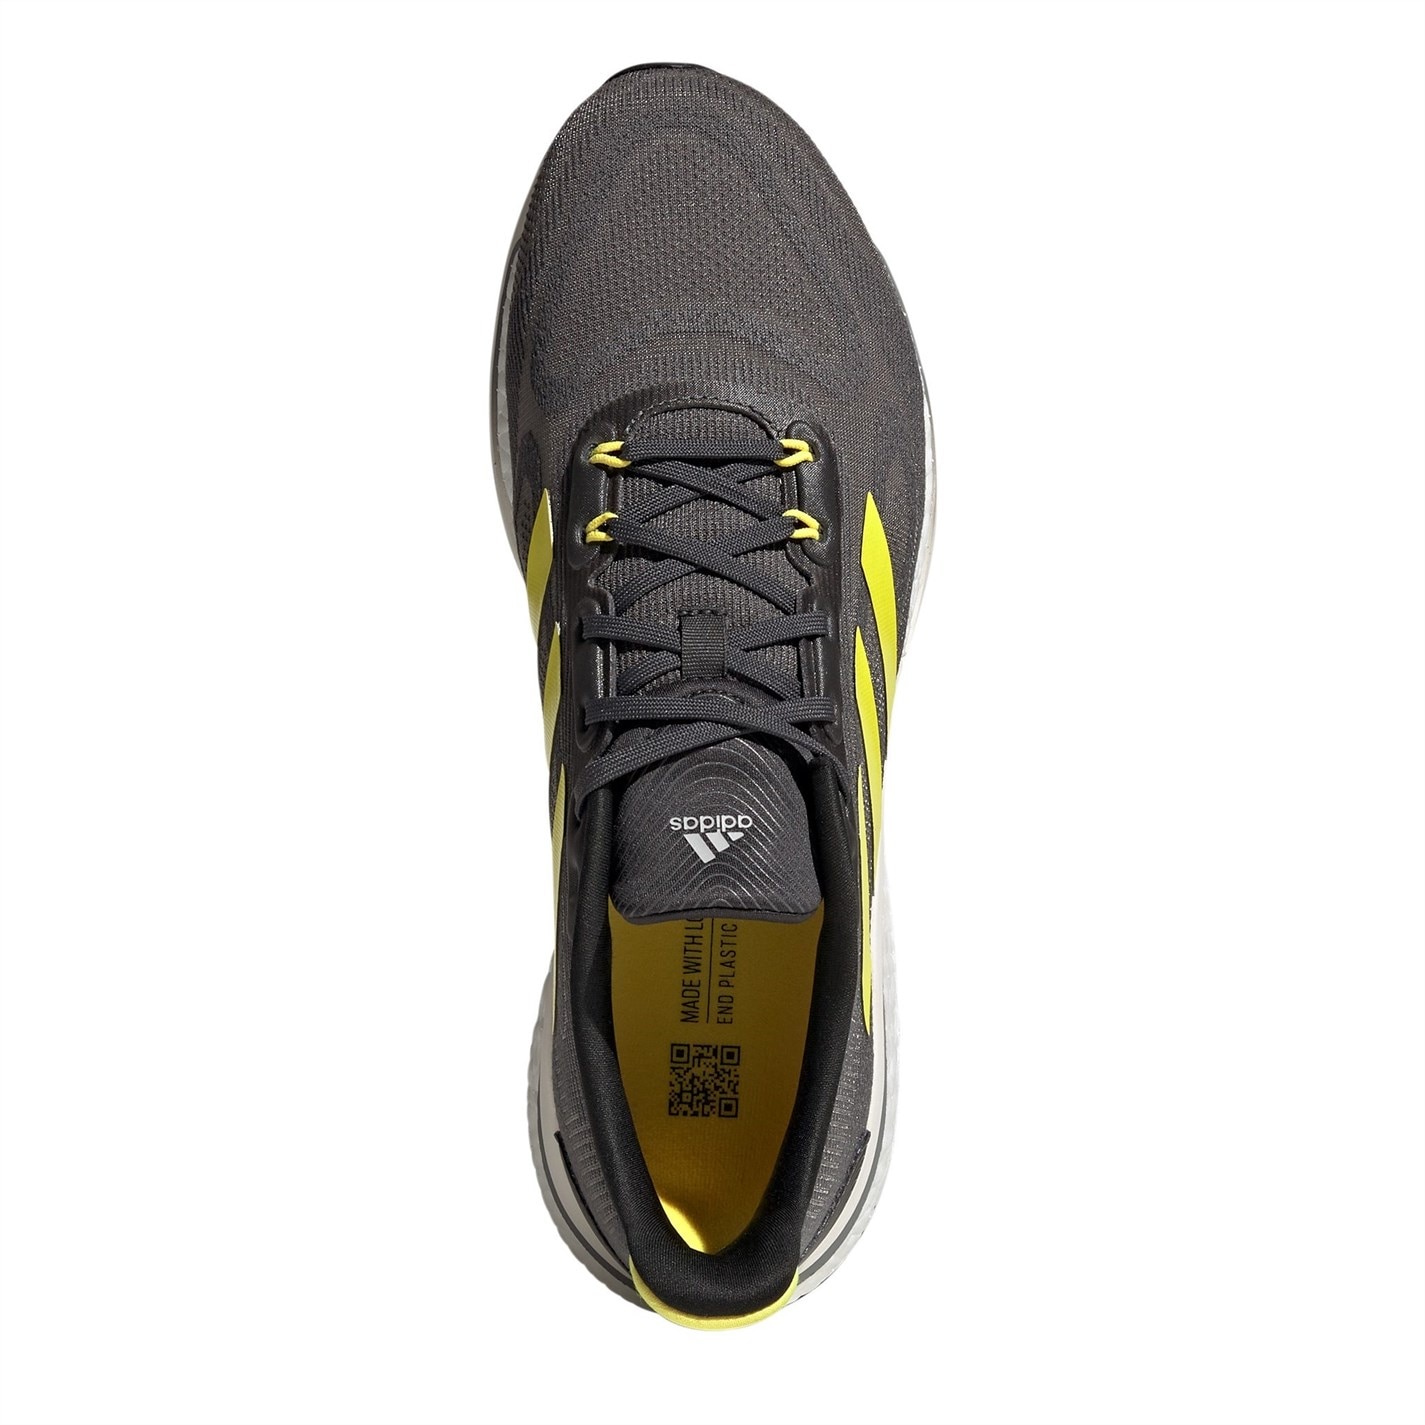 Adidasi alergare adidas Supernova Plus pentru Barbati gri galben alb